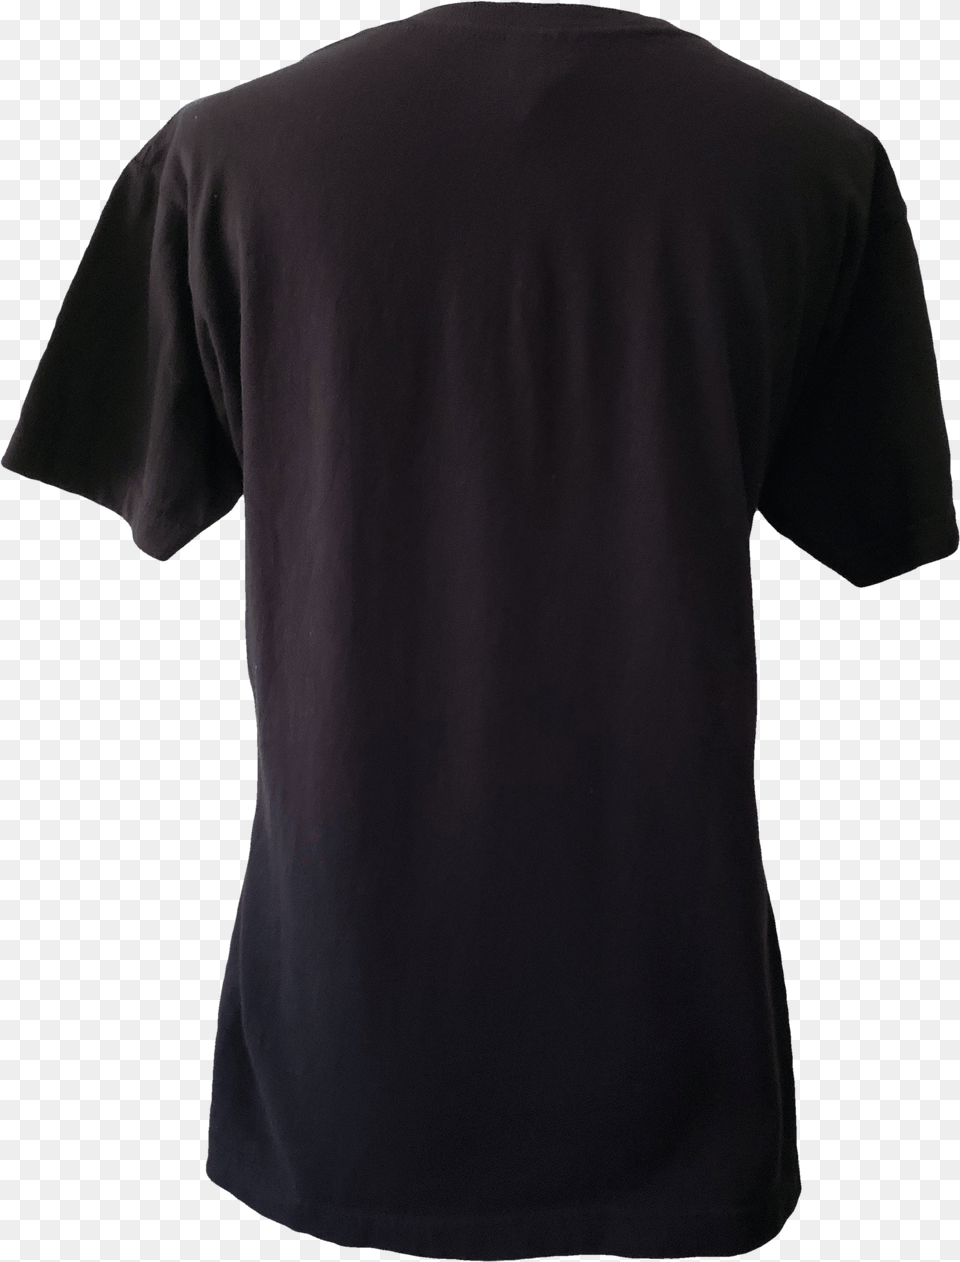 Paris Saint Germain Third Kit 2015, Clothing, T-shirt Png Image